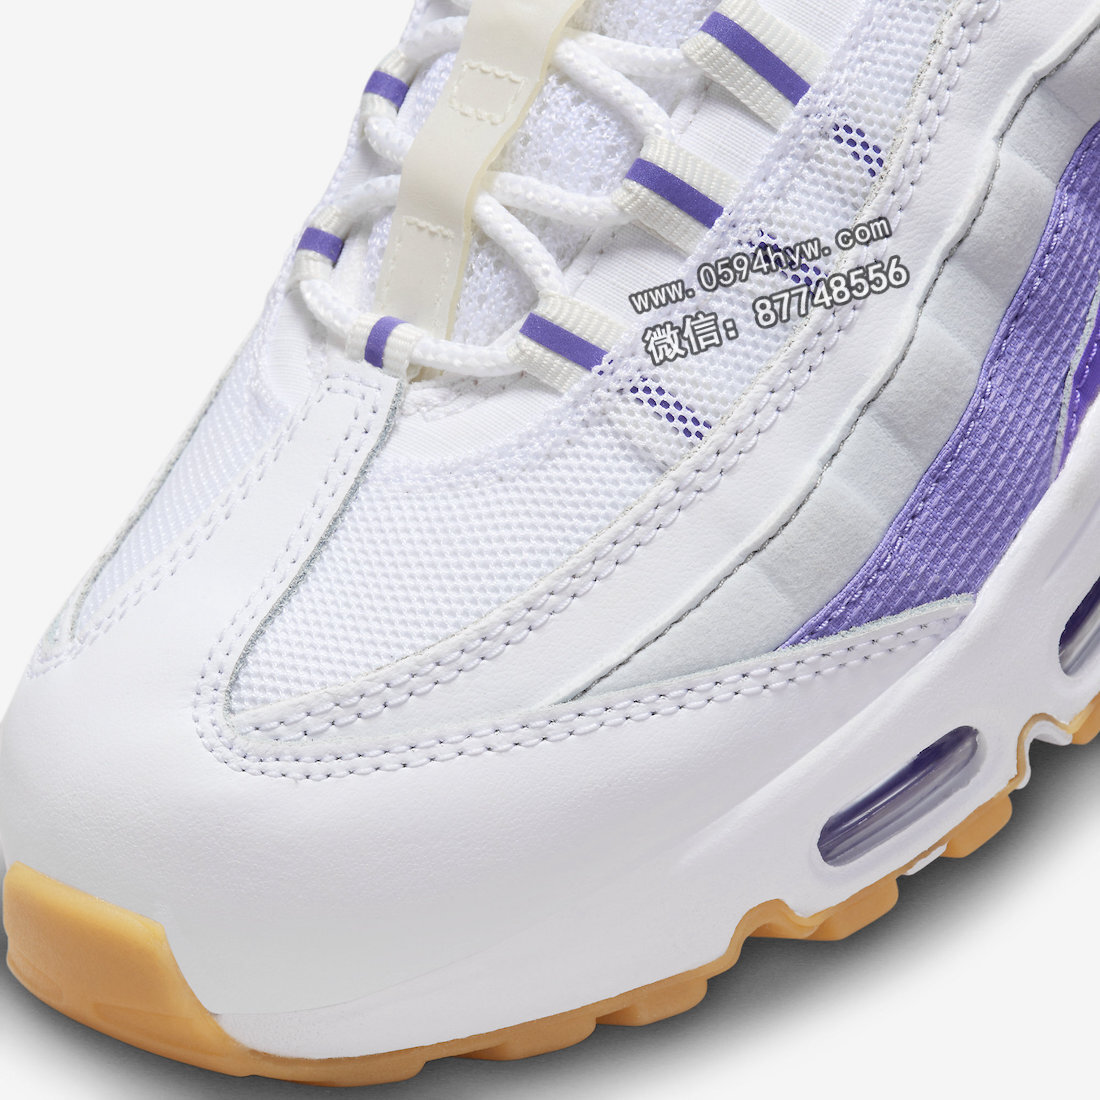 Nike-Air-Max-95-White-Purple-Gum-DM0011-101-6-1